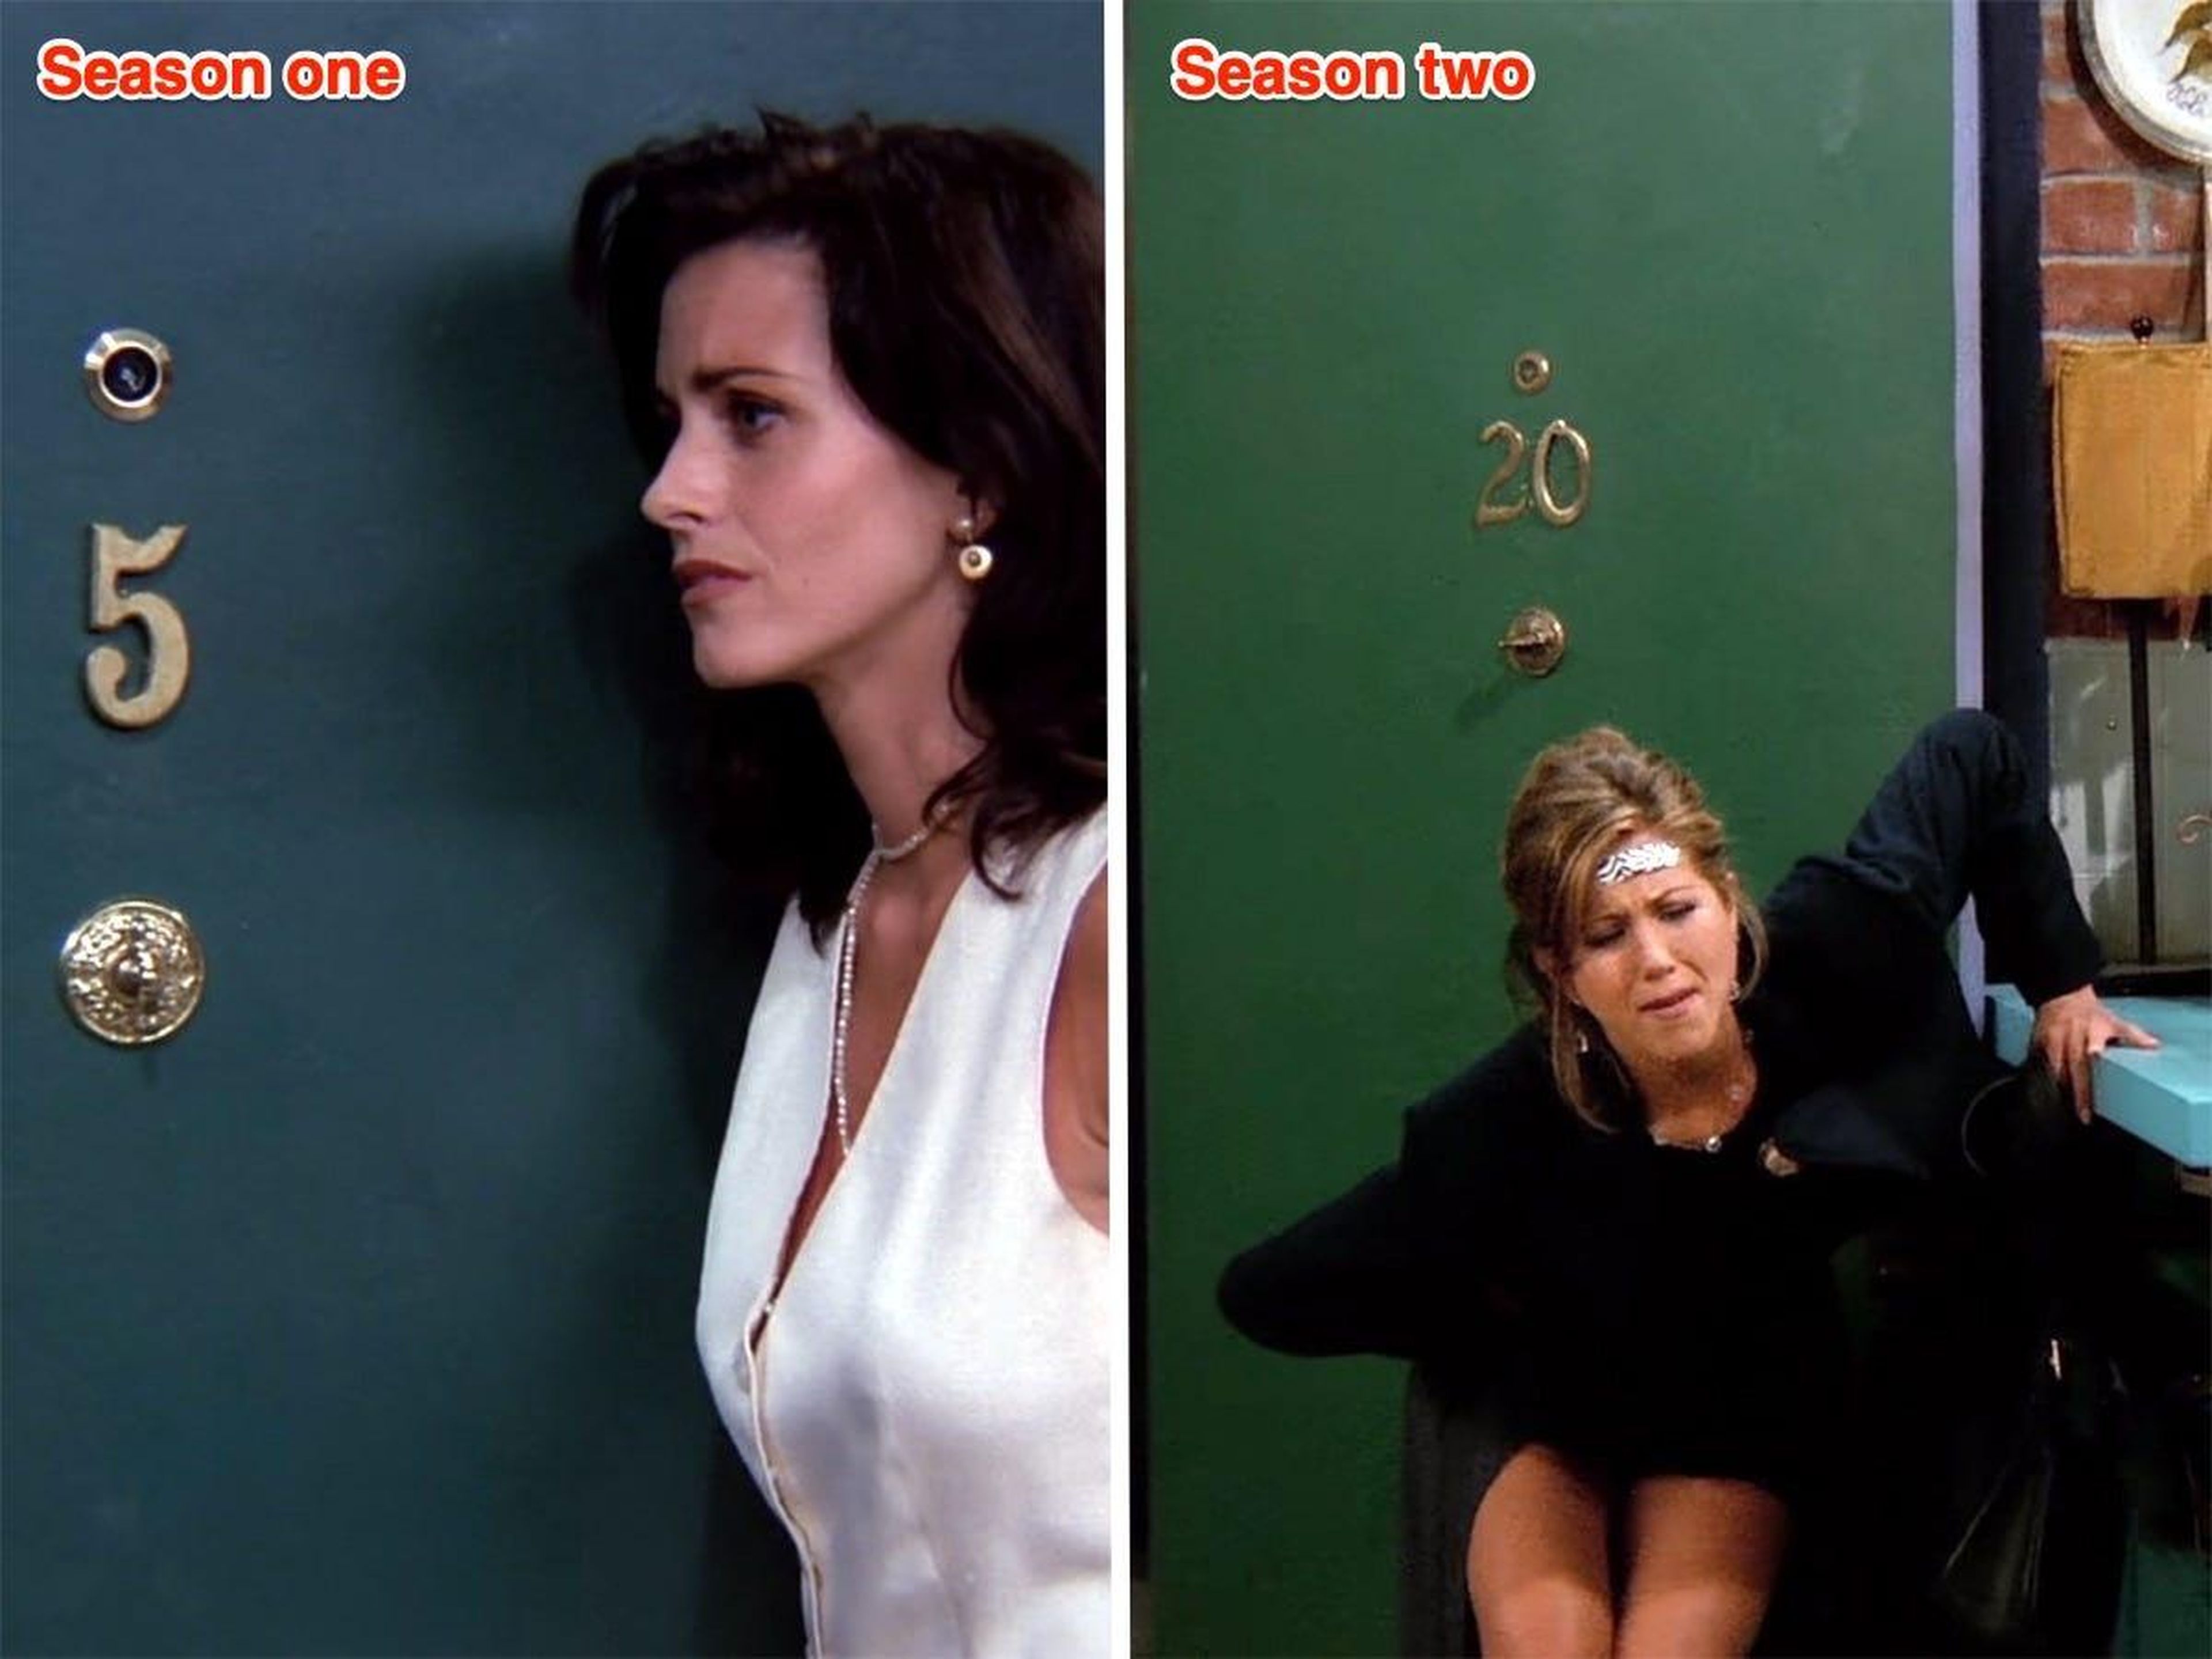 La puerta de entrada de Mónica en la primera temporada, episodio 2 versus la segunda temporada, episodio 1.